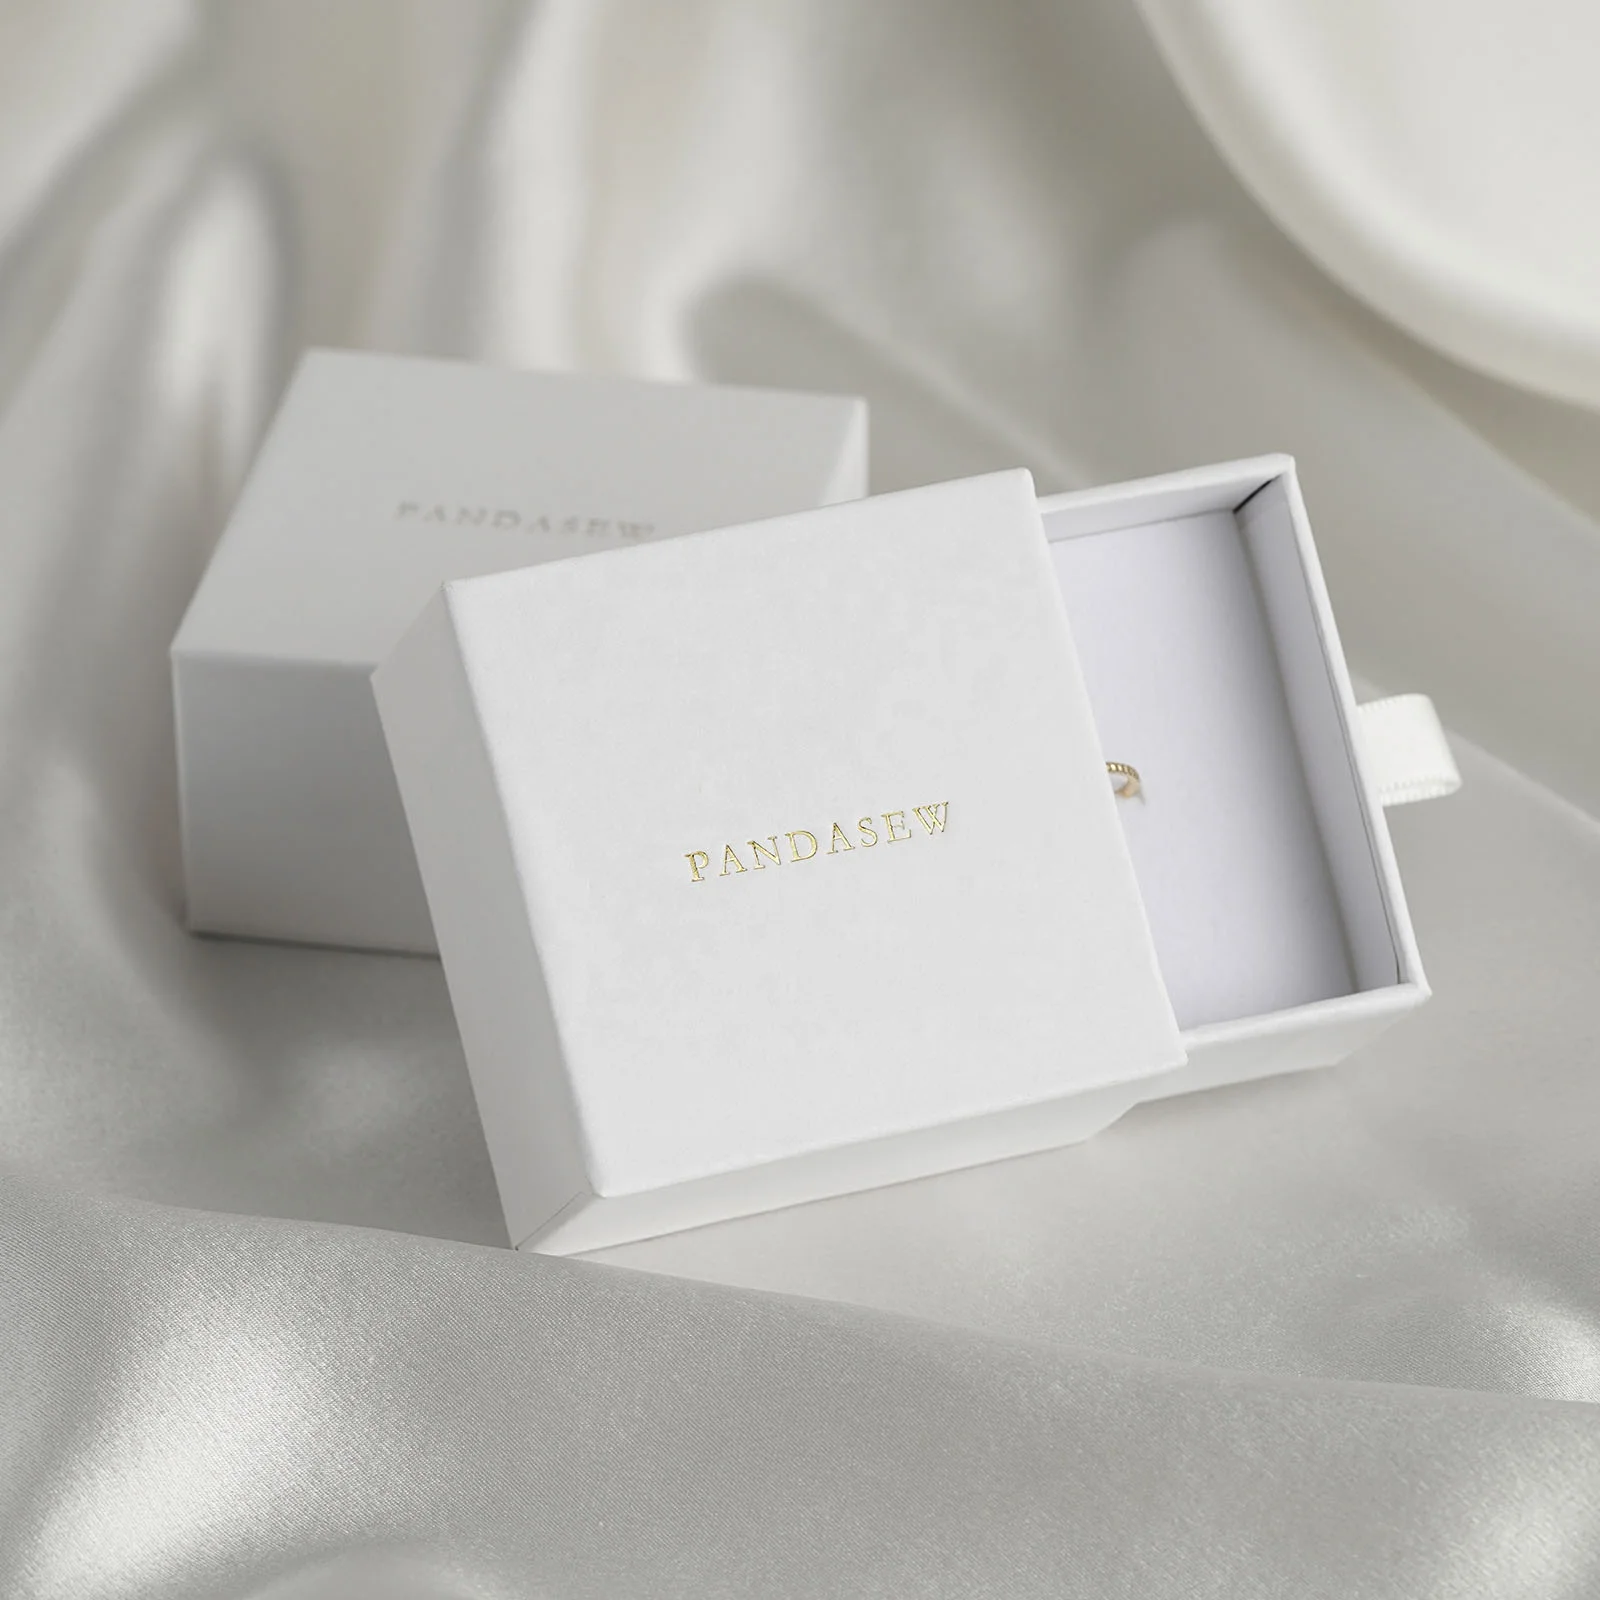 PandaSew 6x6x3,5 см белые подарочные бумажные коробки для украшений с индивидуальным логотипом, роскошная упаковочная коробка для колец